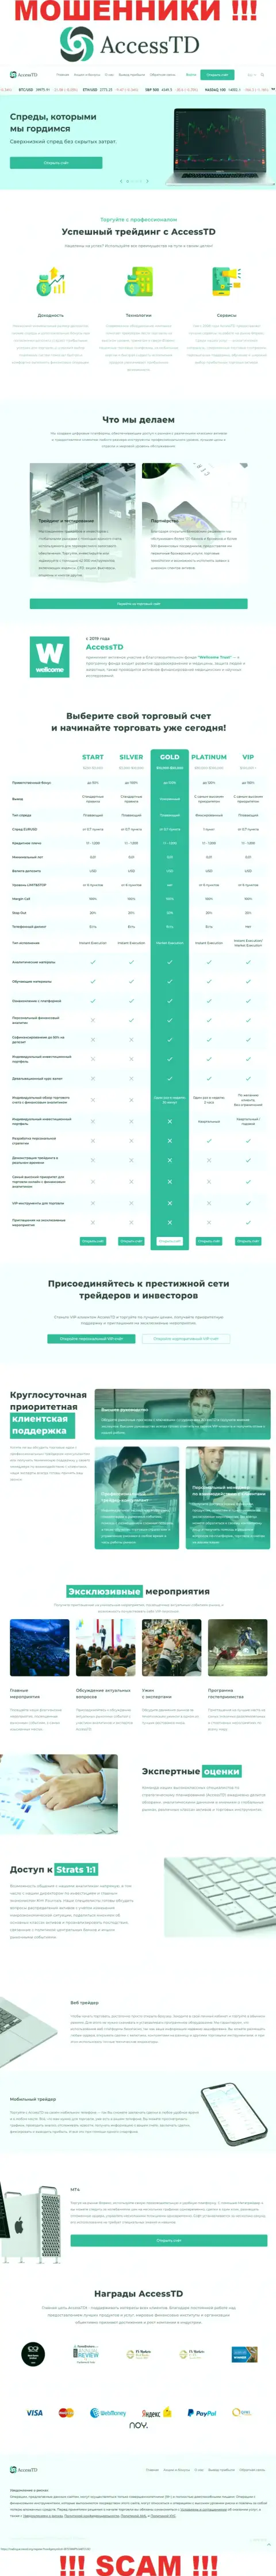 Вранье на страницах интернет-портала мошенников АссессТД Орг